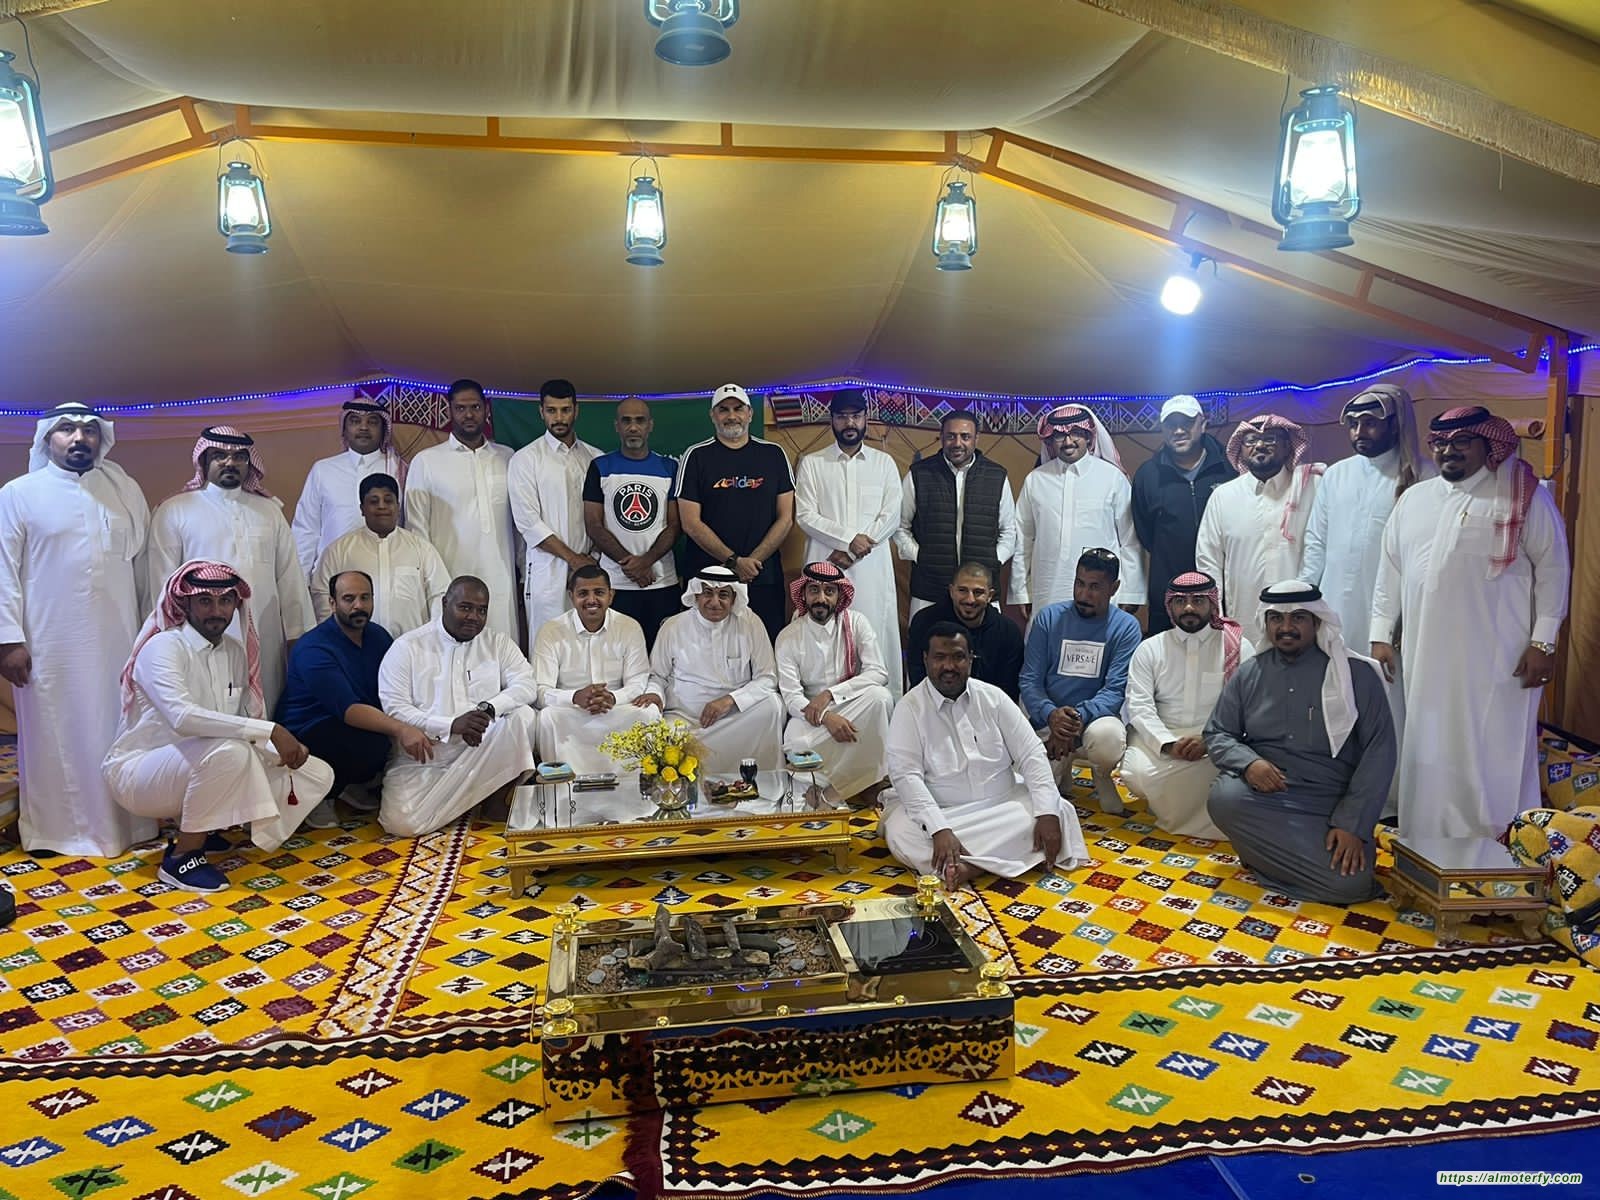 ملتقى شقردية الأحساء يستضيف عدد من اعضاء الاتحاد البحريني واعلاميين